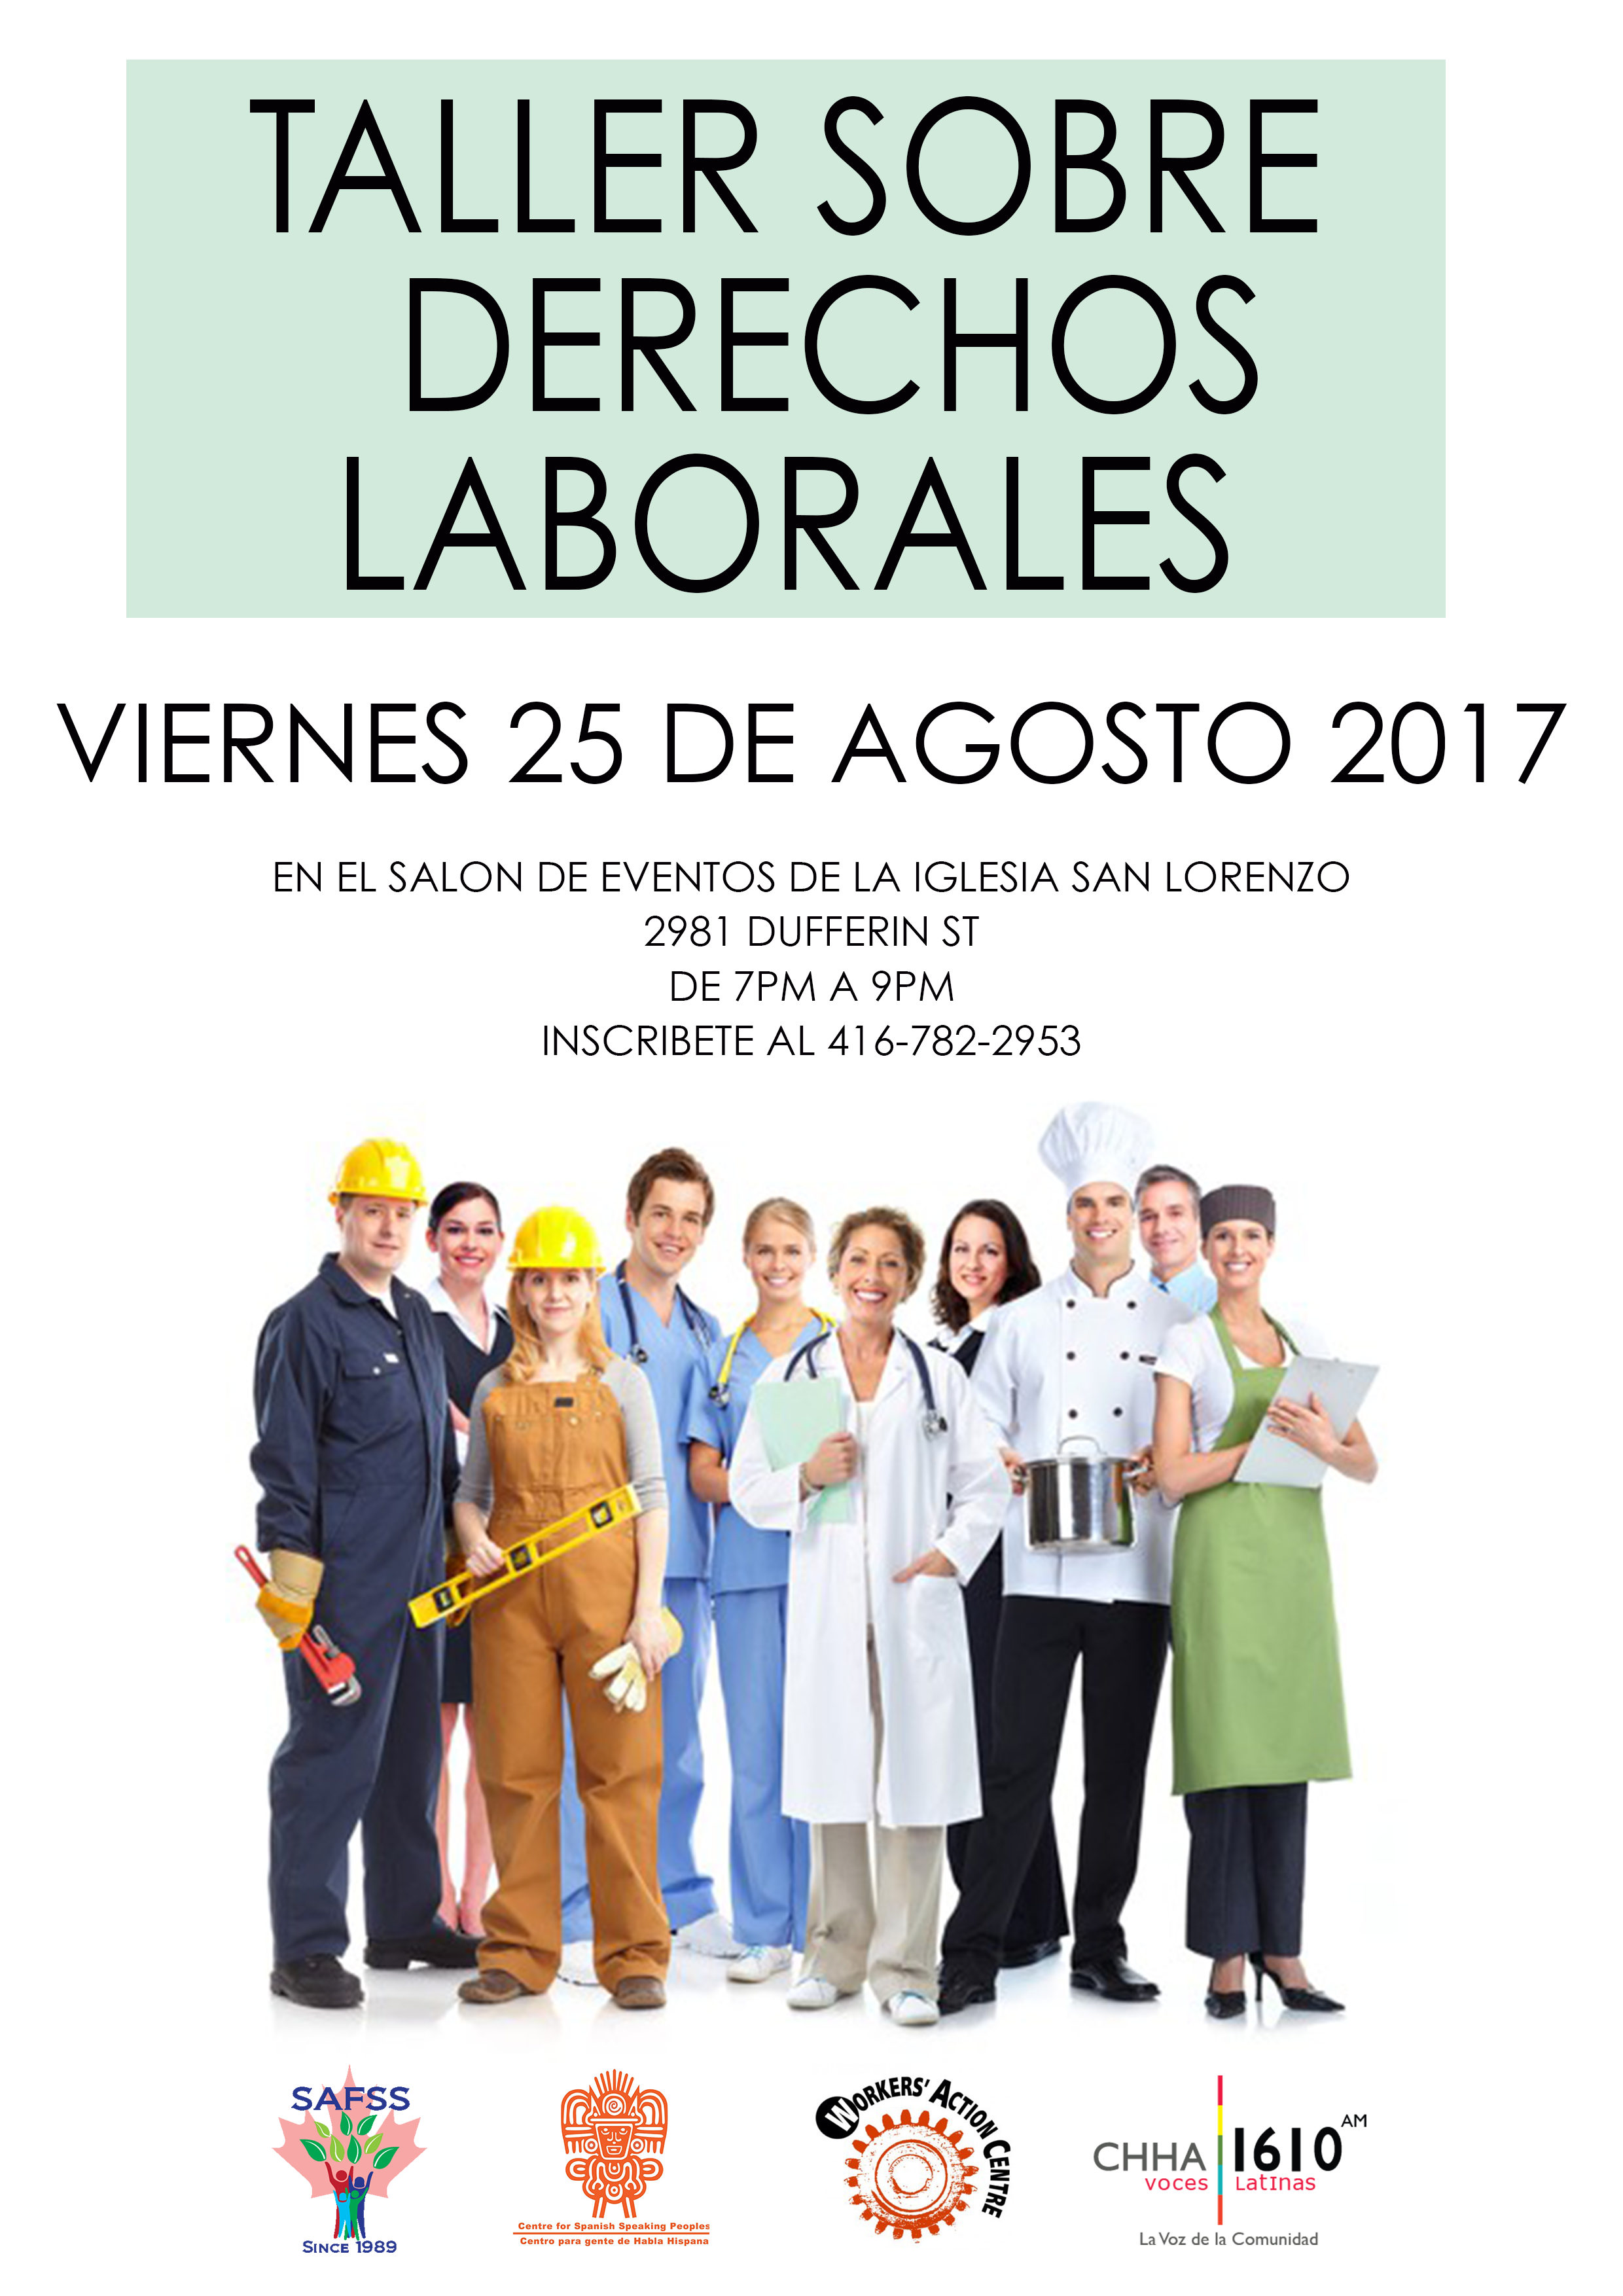 Taller sobre derechos laborales en salón de eventos de Parroquia San Lorenzo